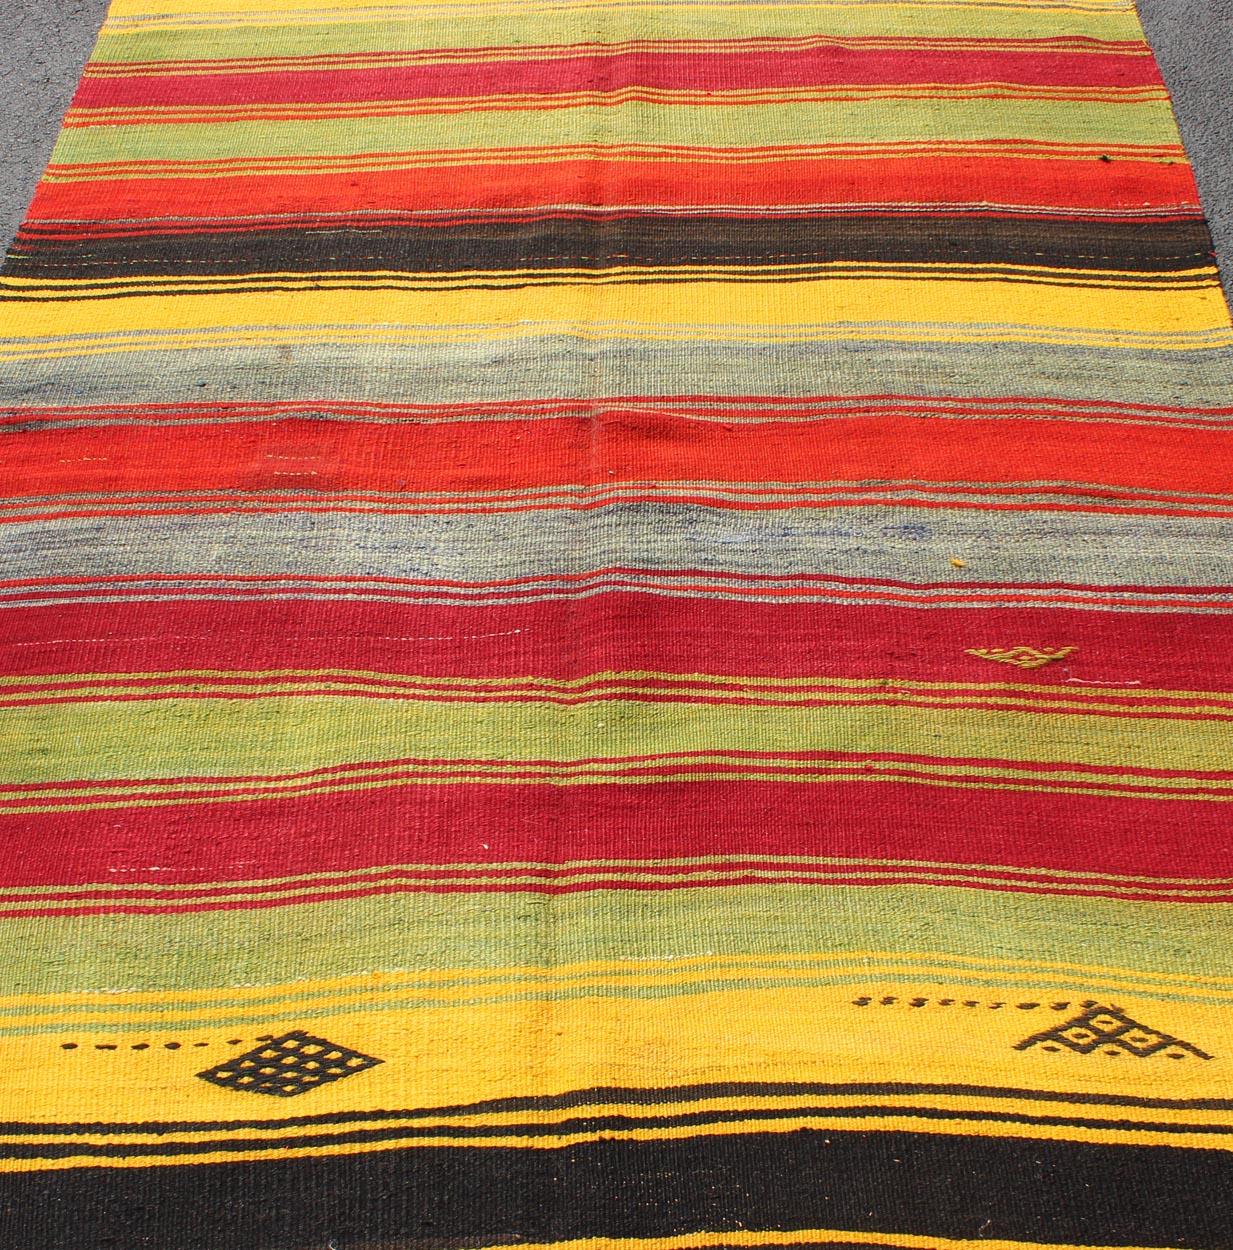 Colorful Vintage Turkish Kilim Rug with Subtle Tribal Shapes and Stripes Design For Sale 4